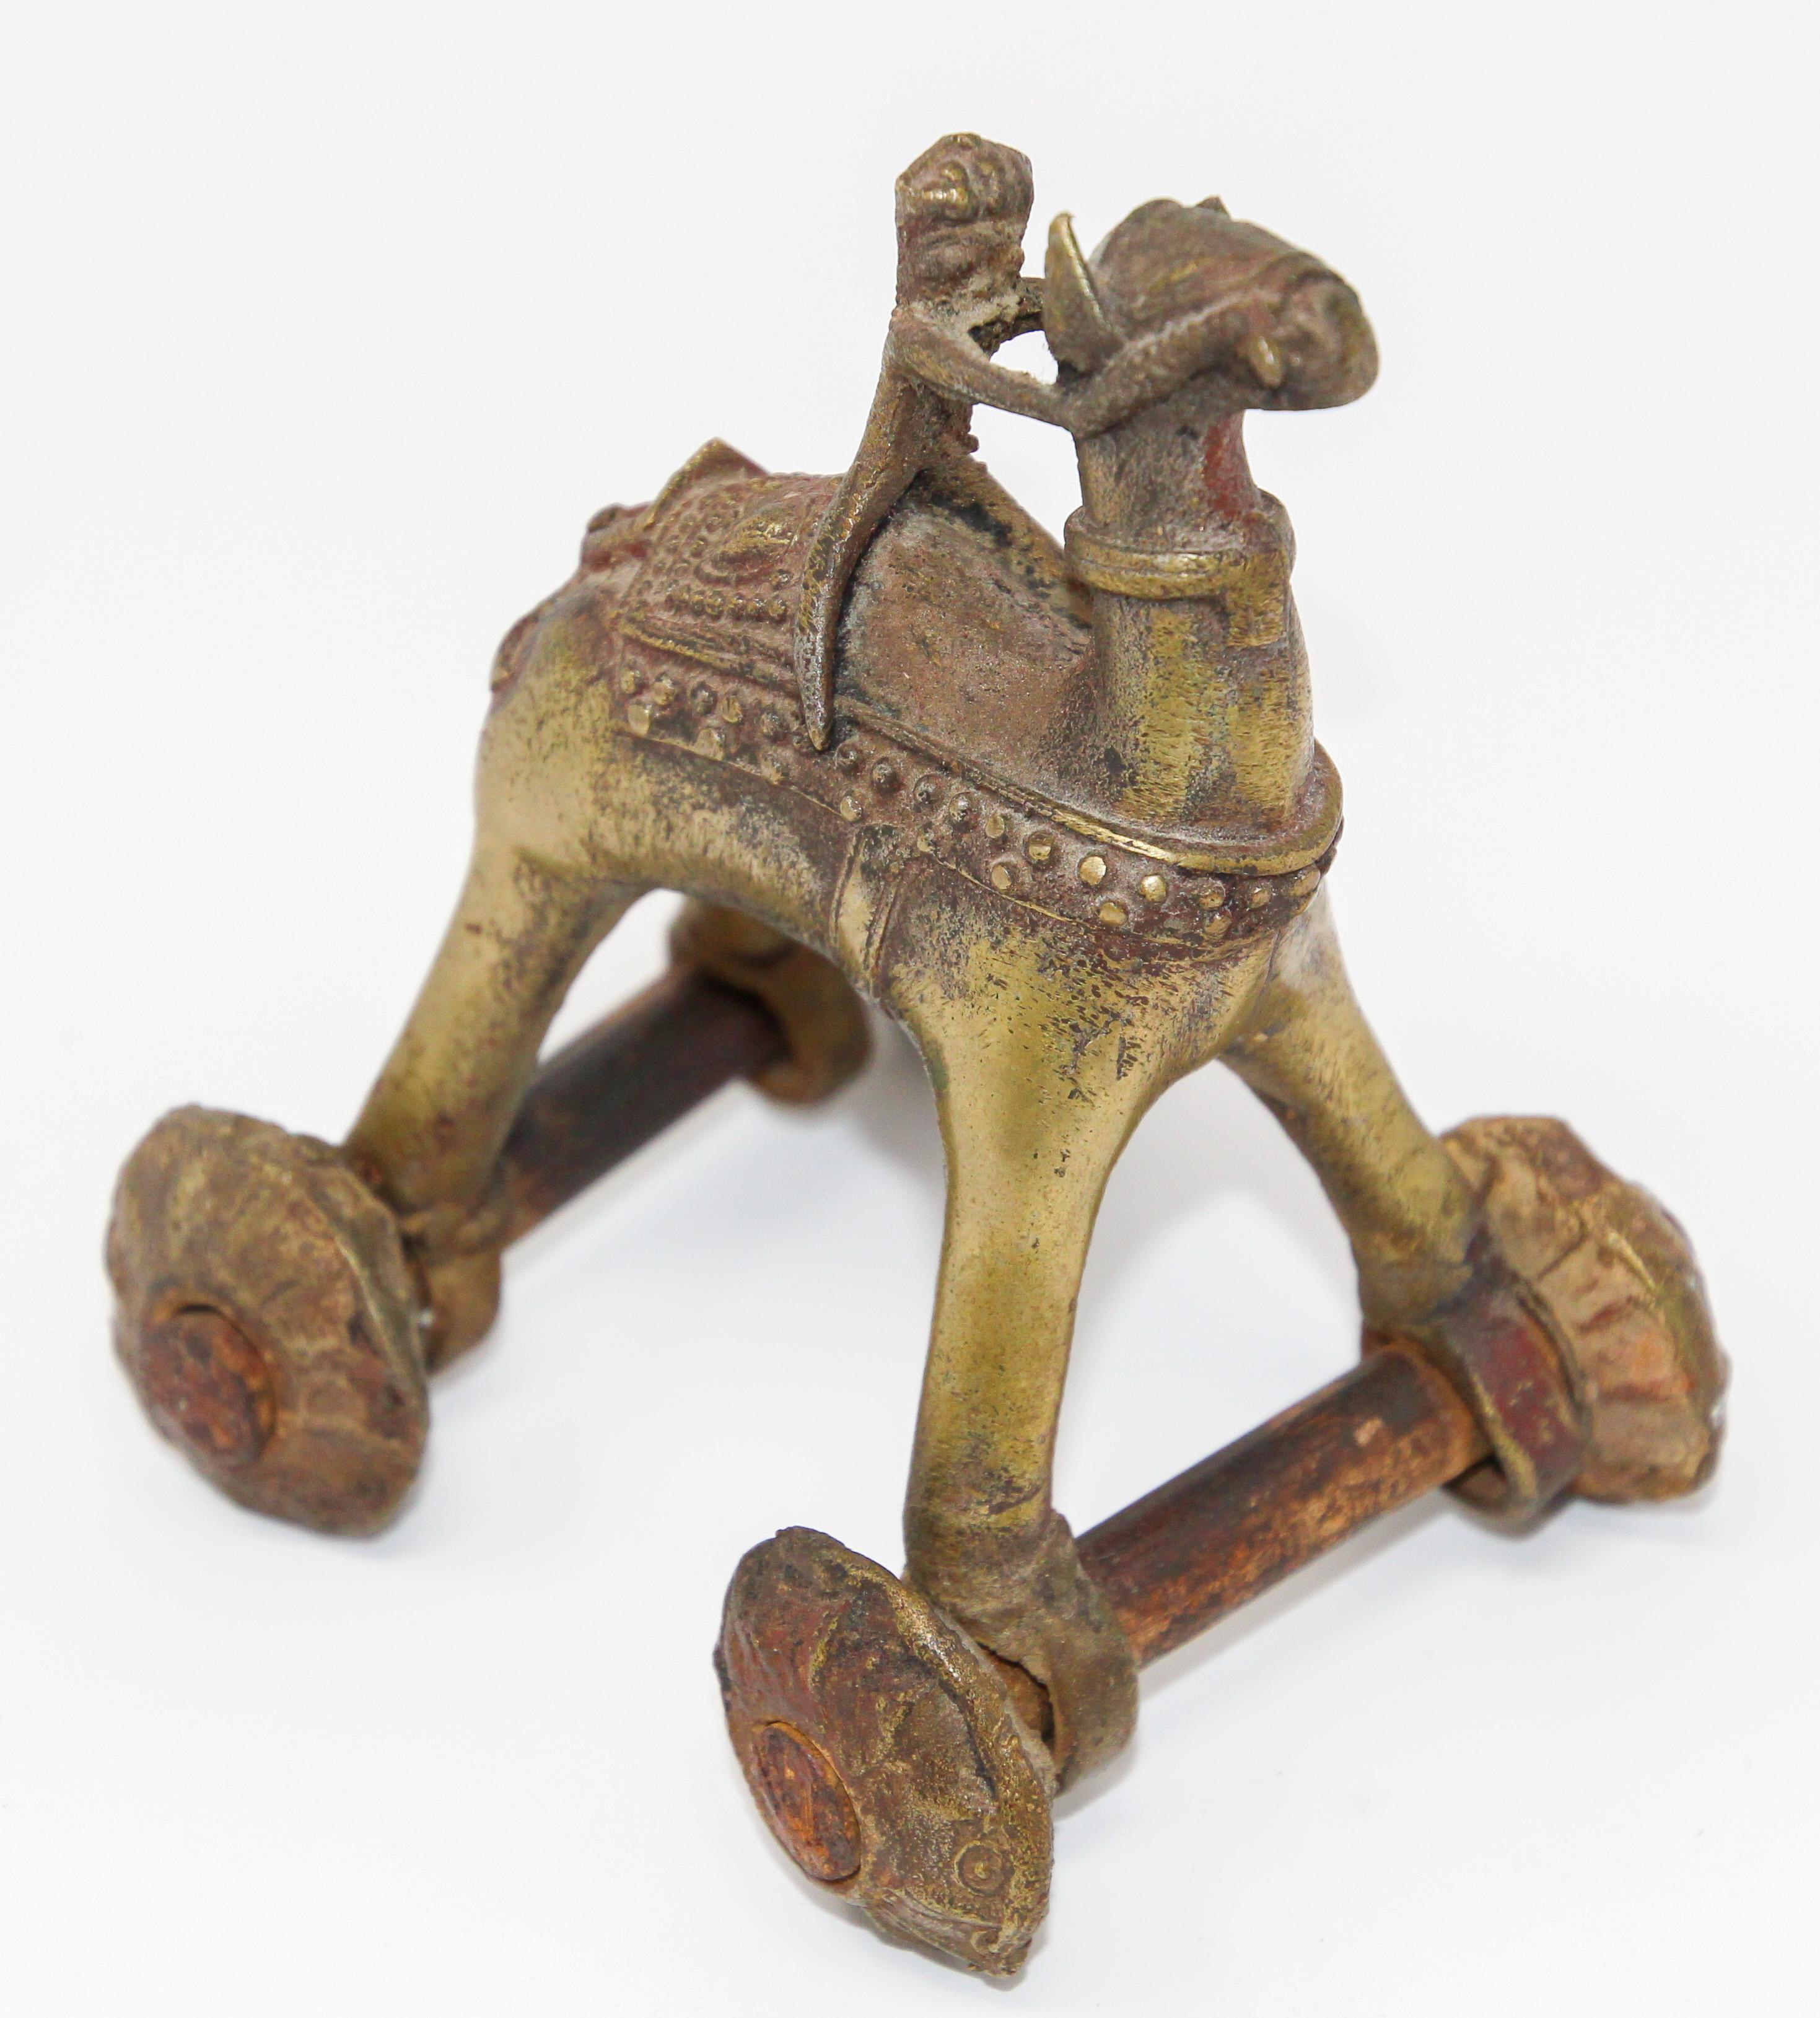 Inspiré d'une scène du Ramakian ou Ramayan, l'épopée indienne Rama et Sita.
Antique Temple indien Jouet chameau en bronze sur roues.
Antique temple hindou en bronze, chameau avec cavalier, statue jouet sur roues.
Communément appelées 